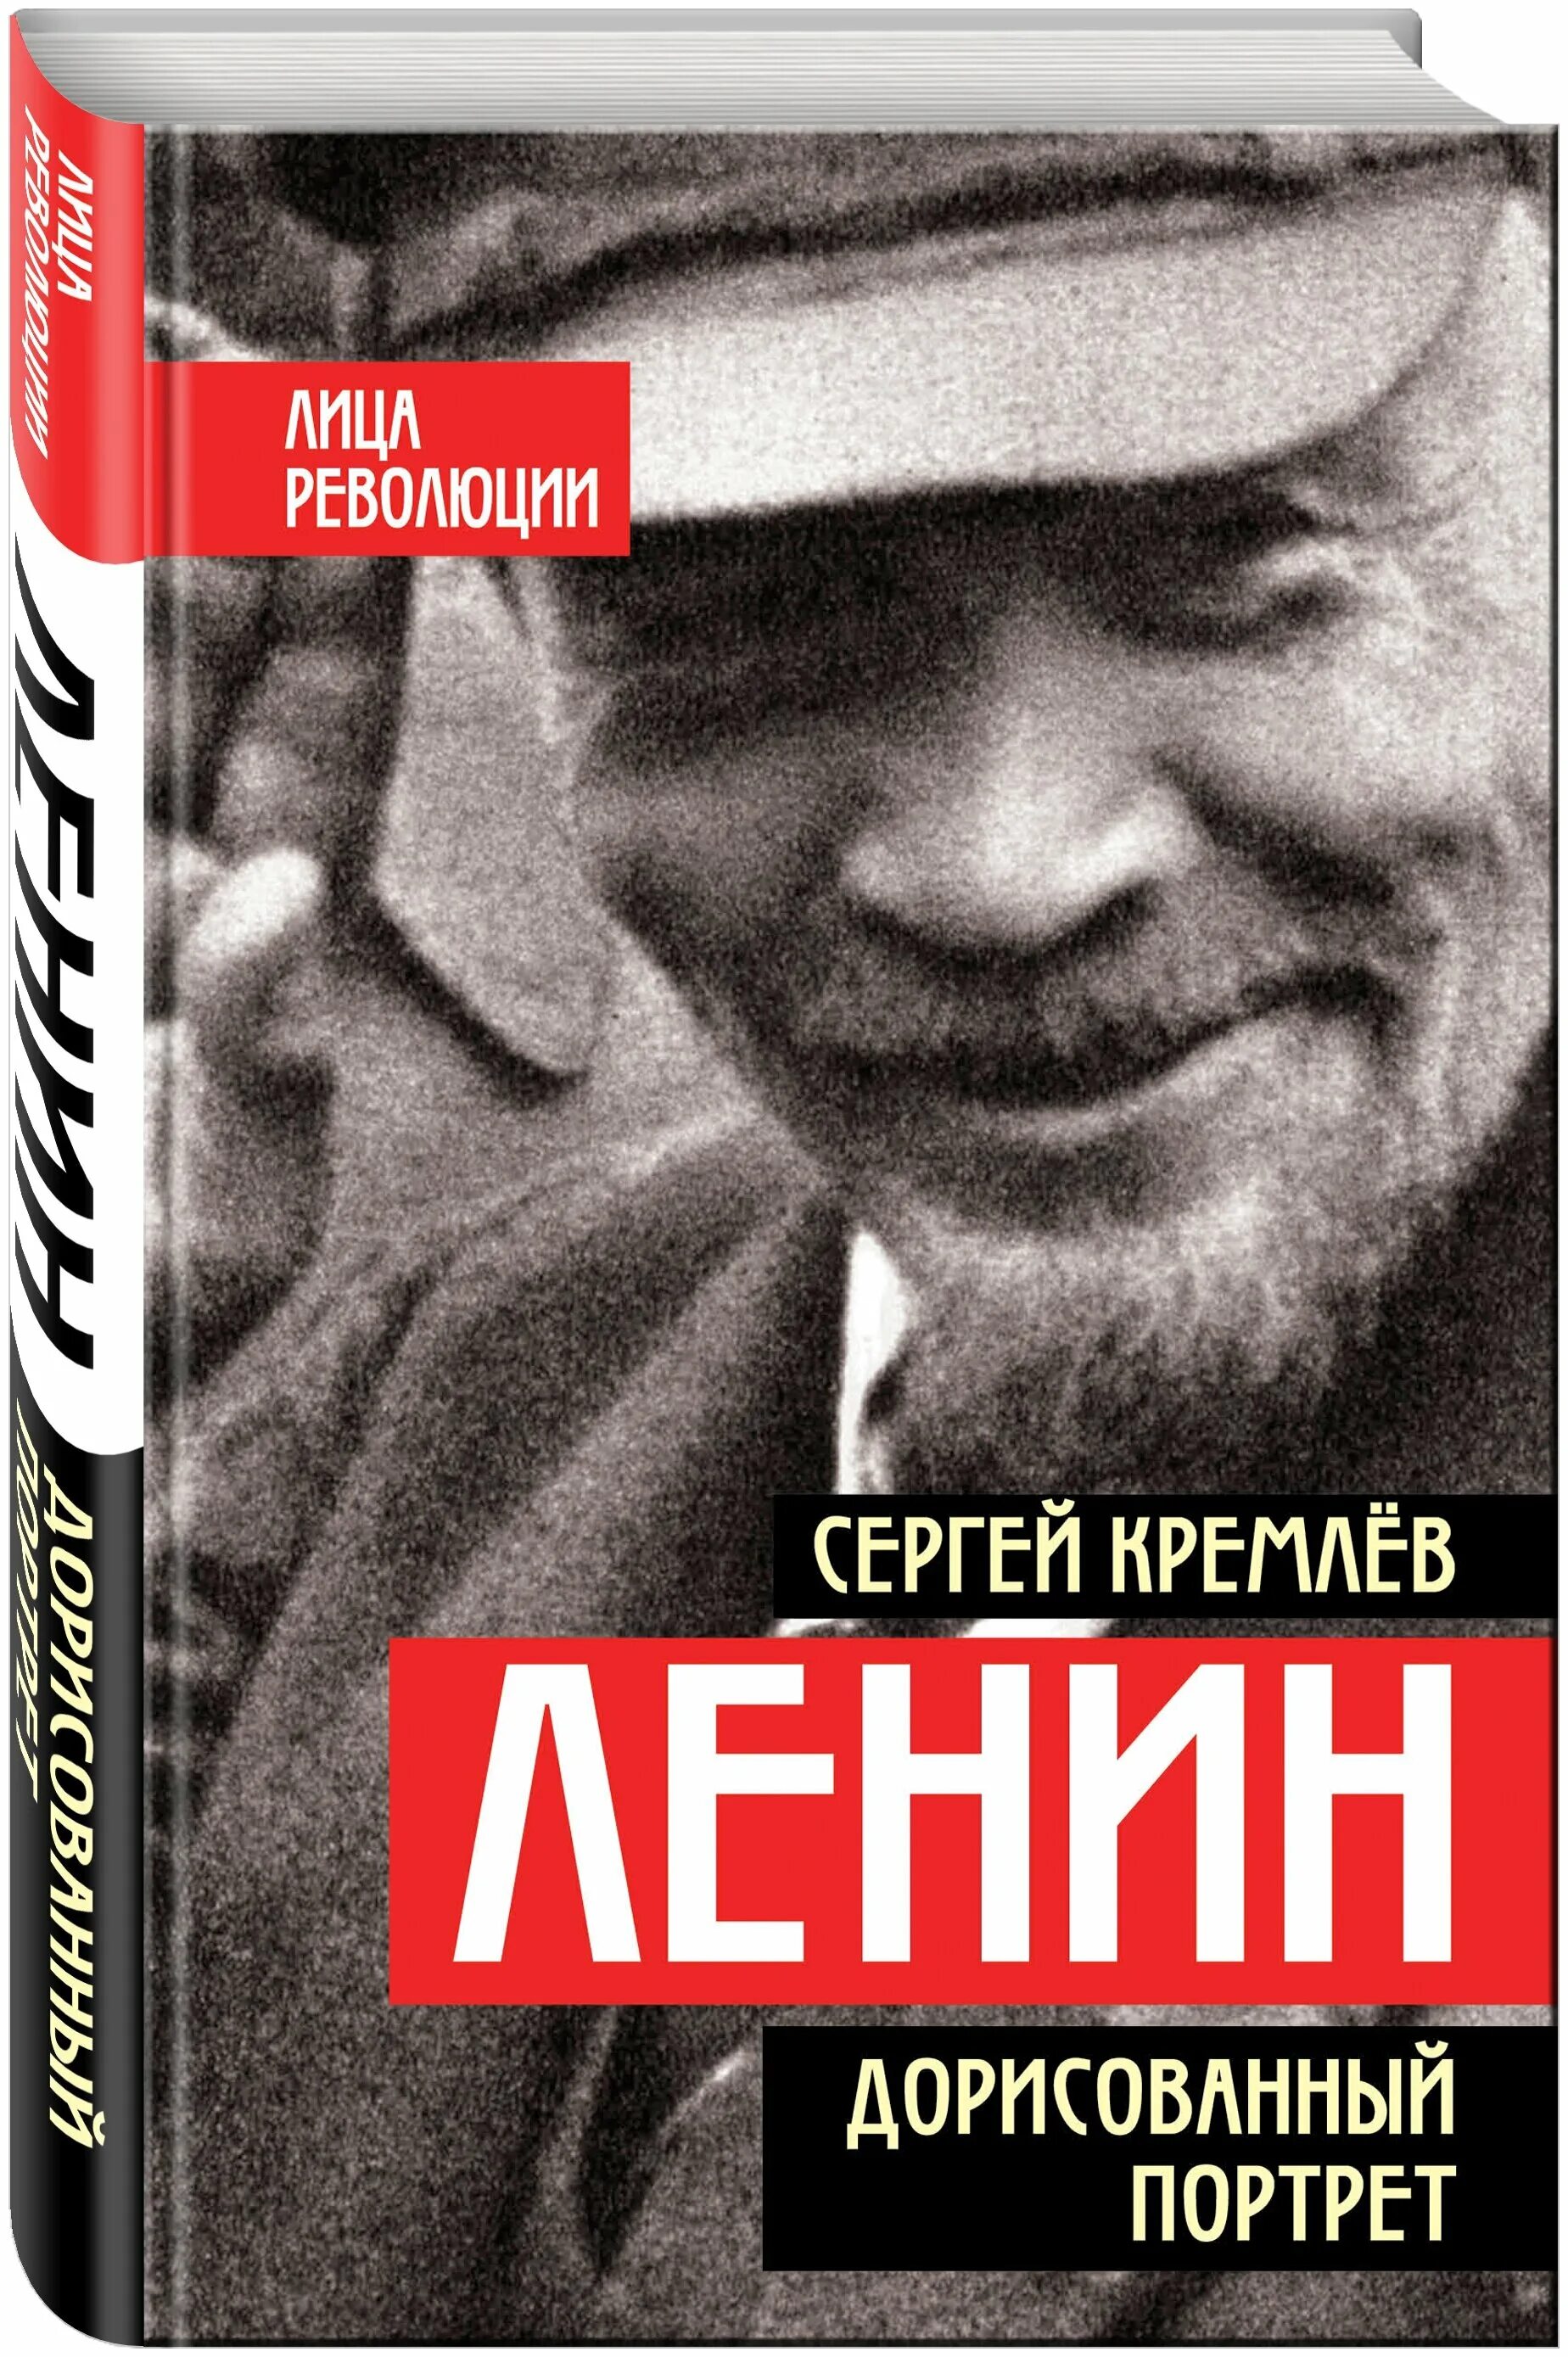 С.Кремлев "Ленин.. Дорисованный портрет". Ленин. Дорисованный портрет. Книга Ленин. Книги ленина купить